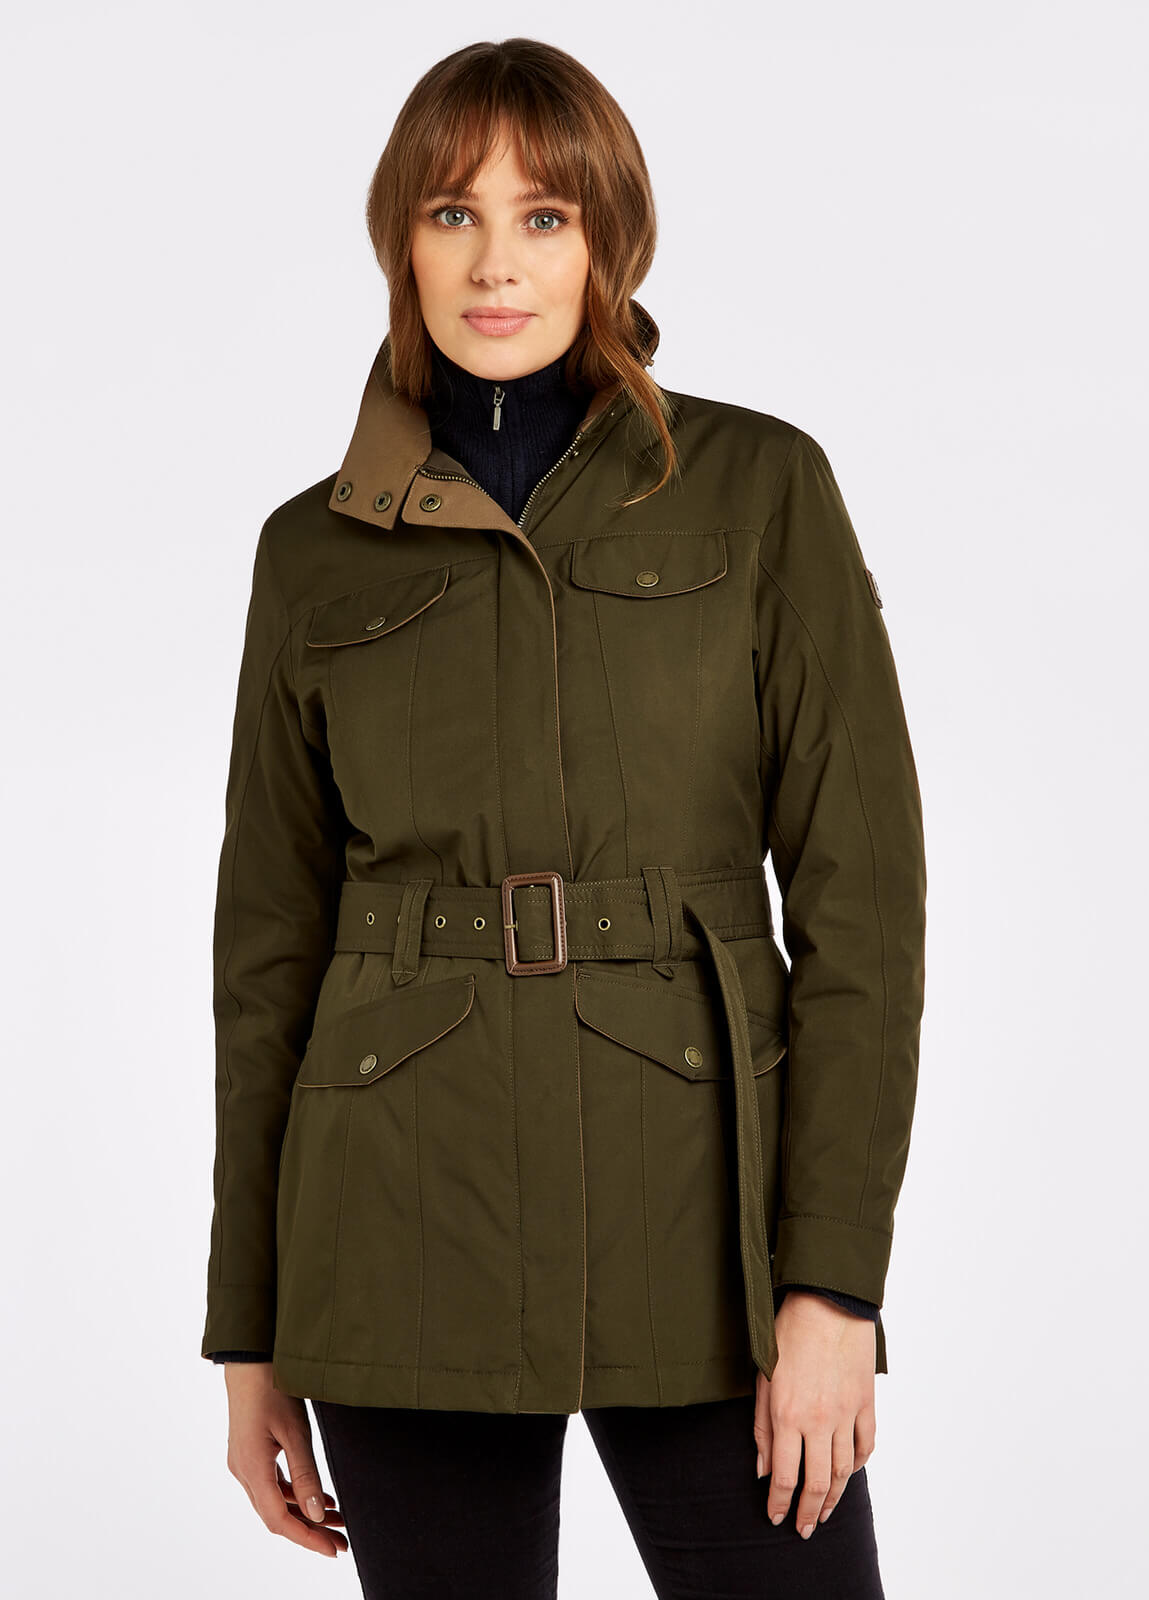 discount 57% Green 38                  EU VILA Puffer jacket WOMEN FASHION Coats Casual 